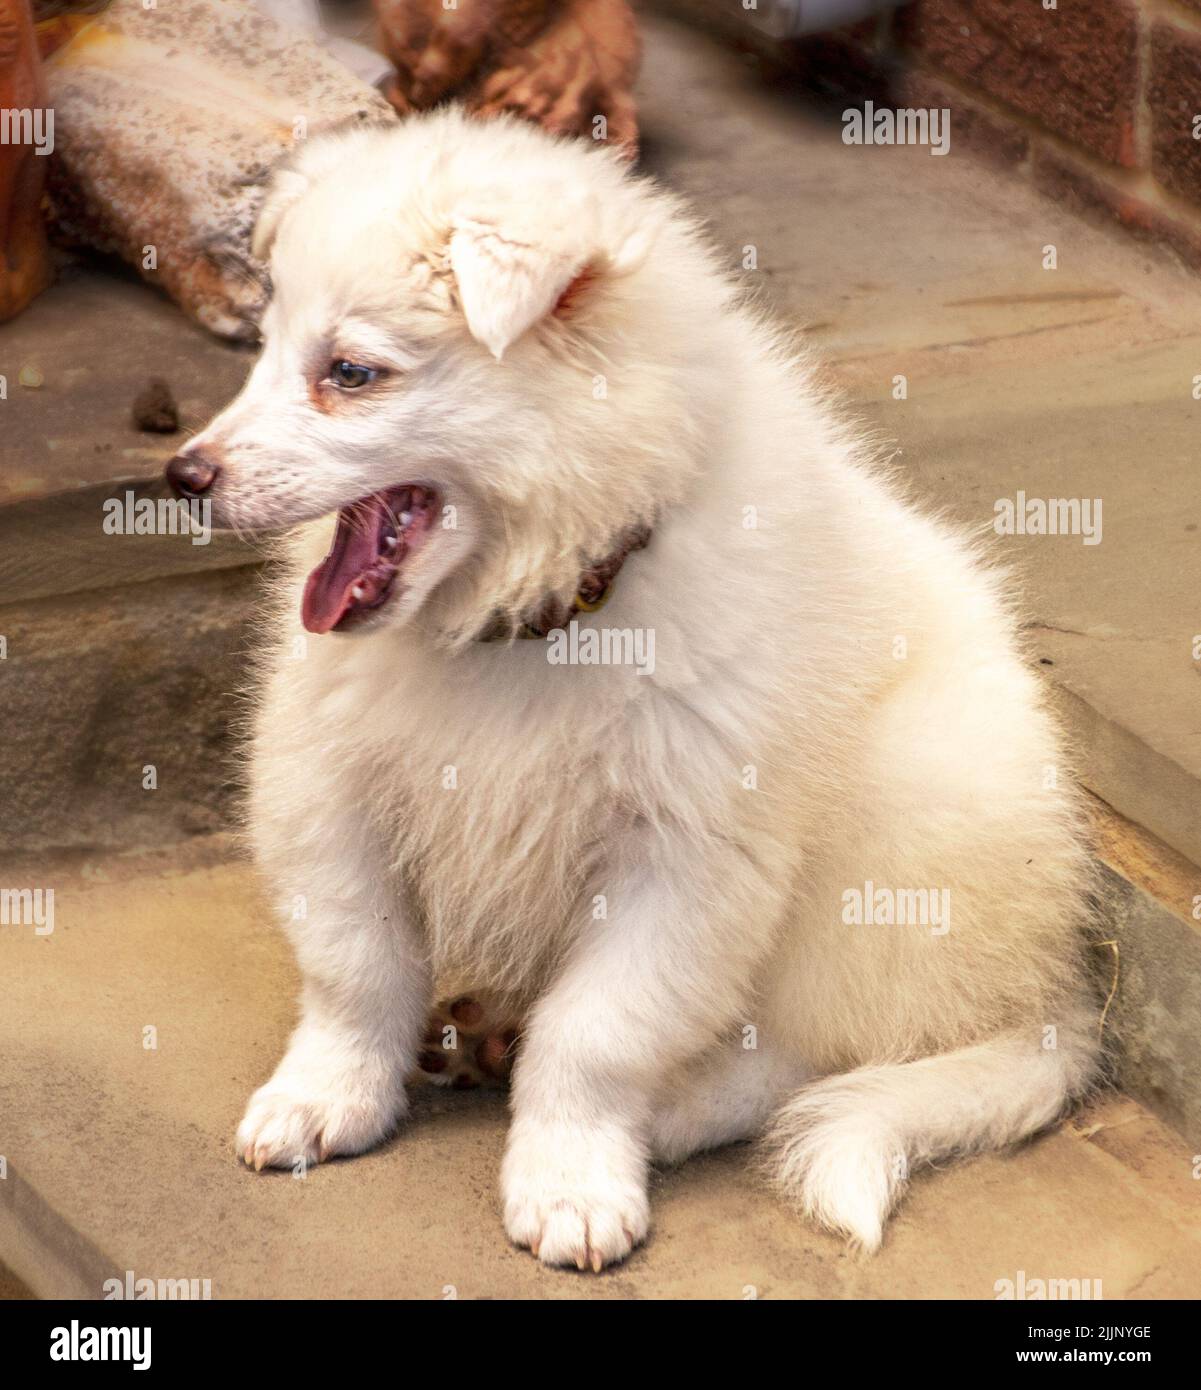 Nove mesi vecchio bianco soffice americano Eskimo cucciolo seduta su passi esterni che assomiglia a lui sta ridendo Foto Stock